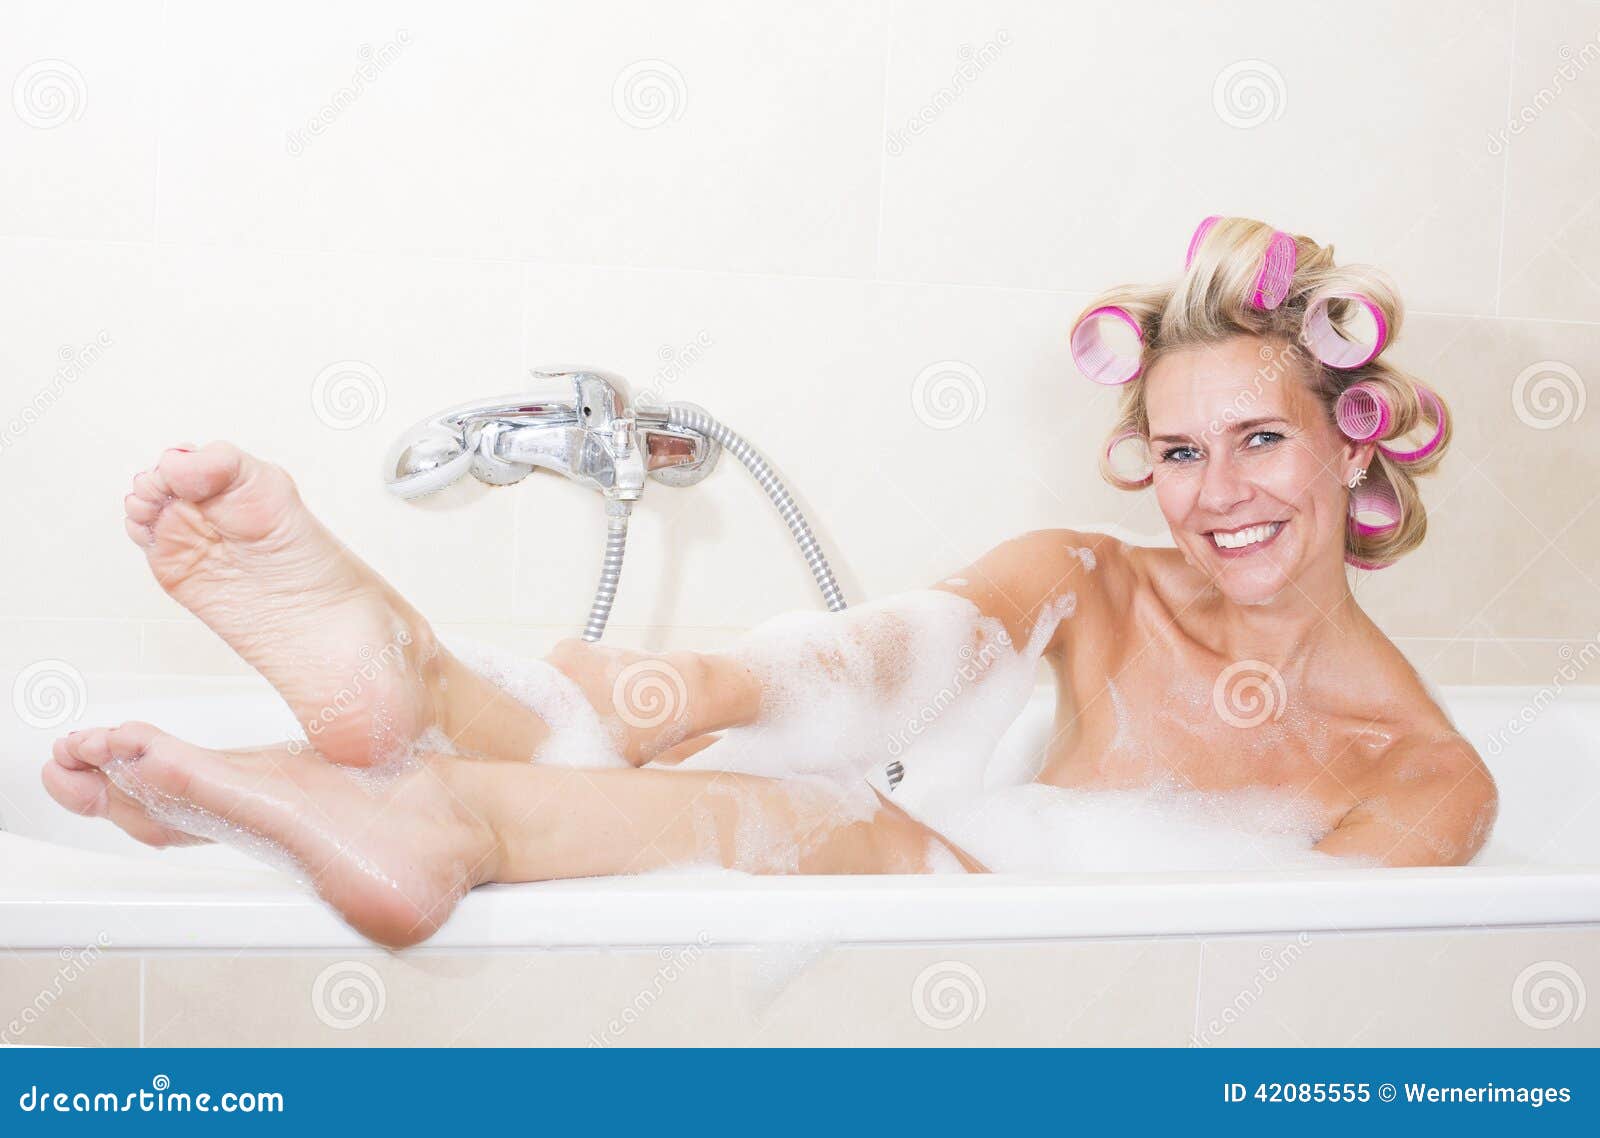 Жена моет ванну. Женщина в бигудях. В бигудях в ванной. Женщина в бигудях в в ванной. Фотосессия в ванне бигуди.